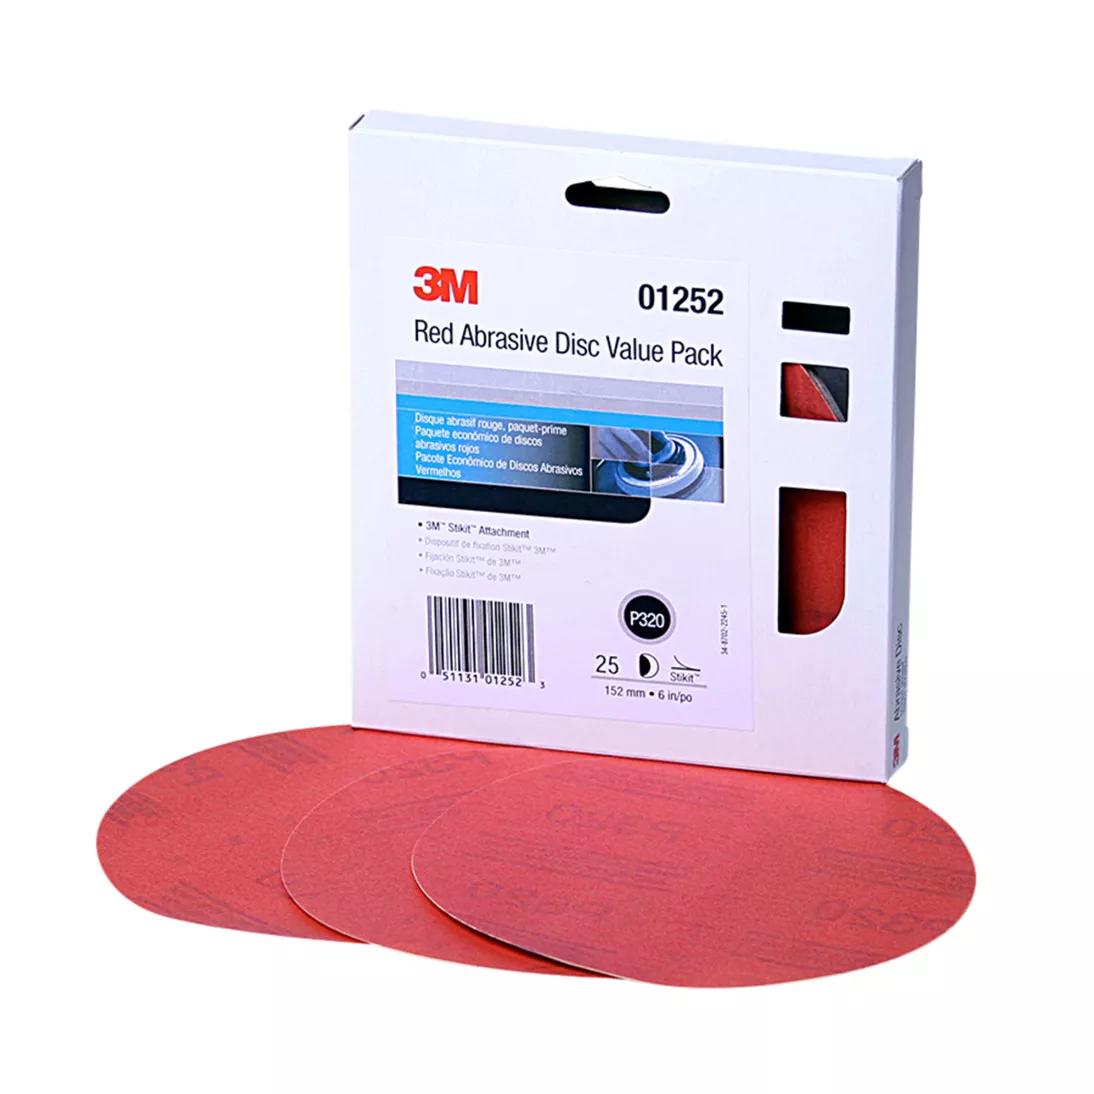 3M™ Red Abrasive Stikit™ Disc Value Pack, 01252, 6 in, P320 grade, 25
discs per pack, 4 packs per case